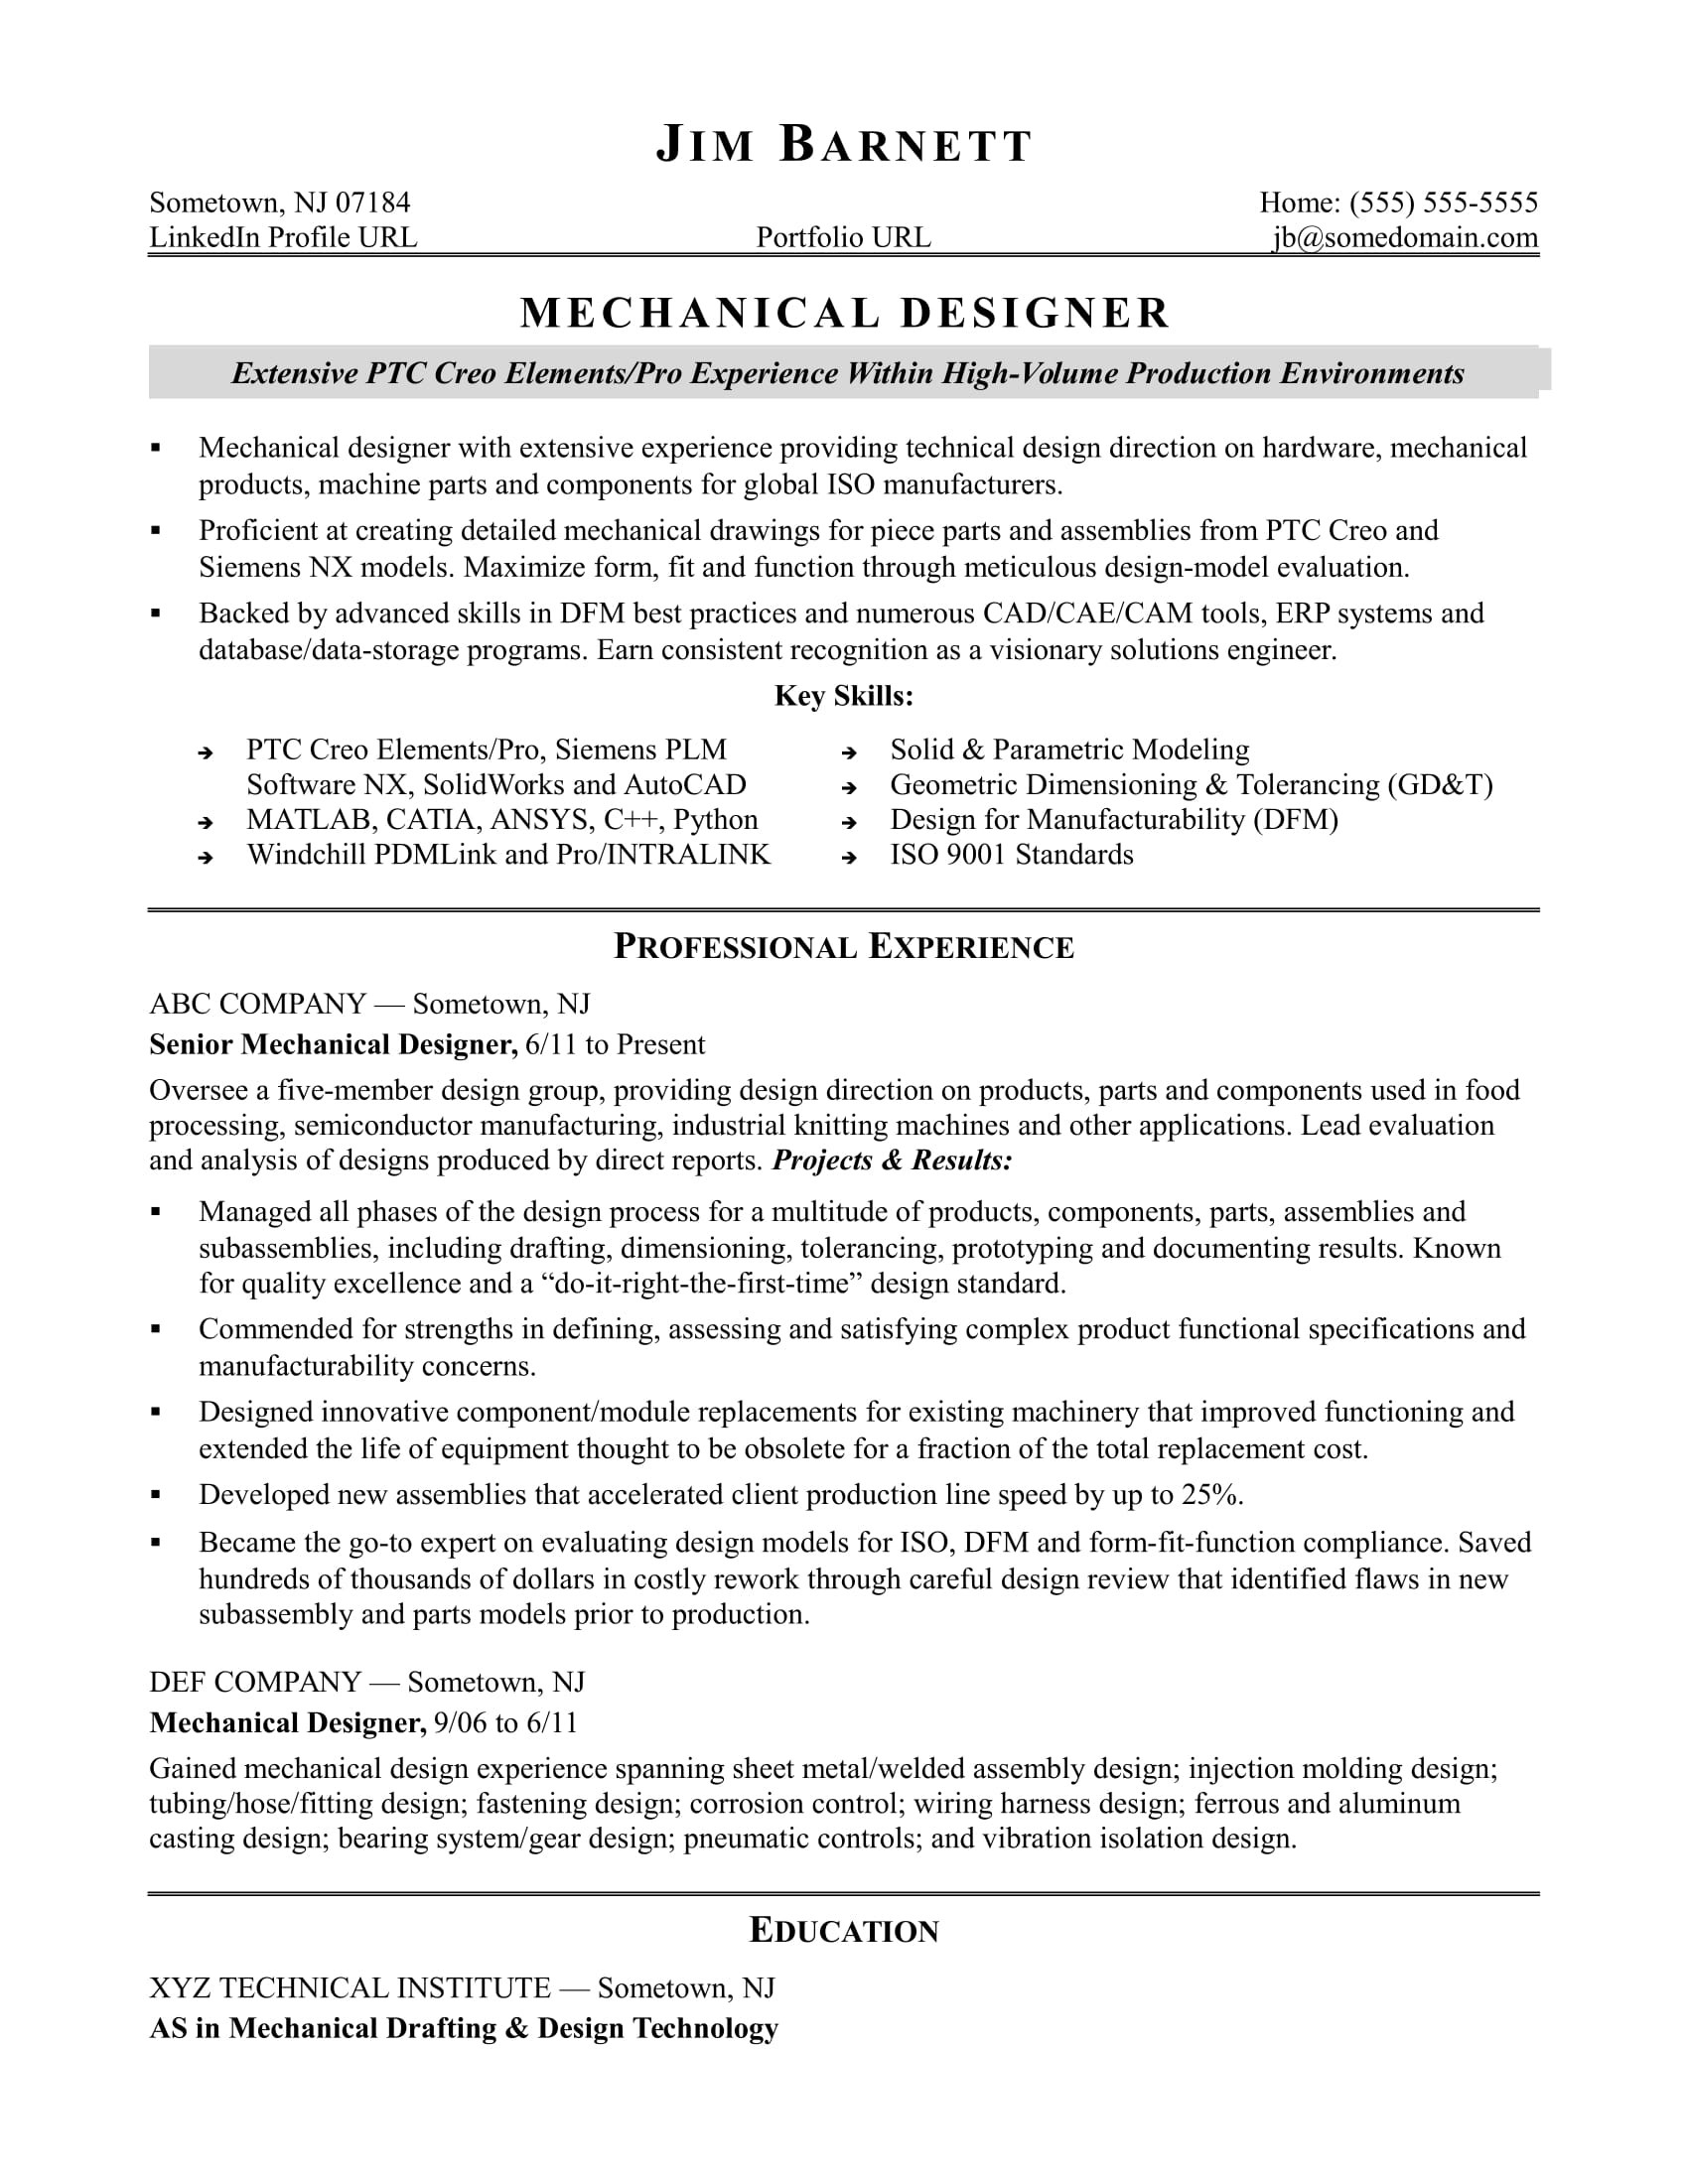 1 Year Experience Resume Sample for Mechanical Engineer Sample Resume for An Experienced Mechanical Designer Monster.com